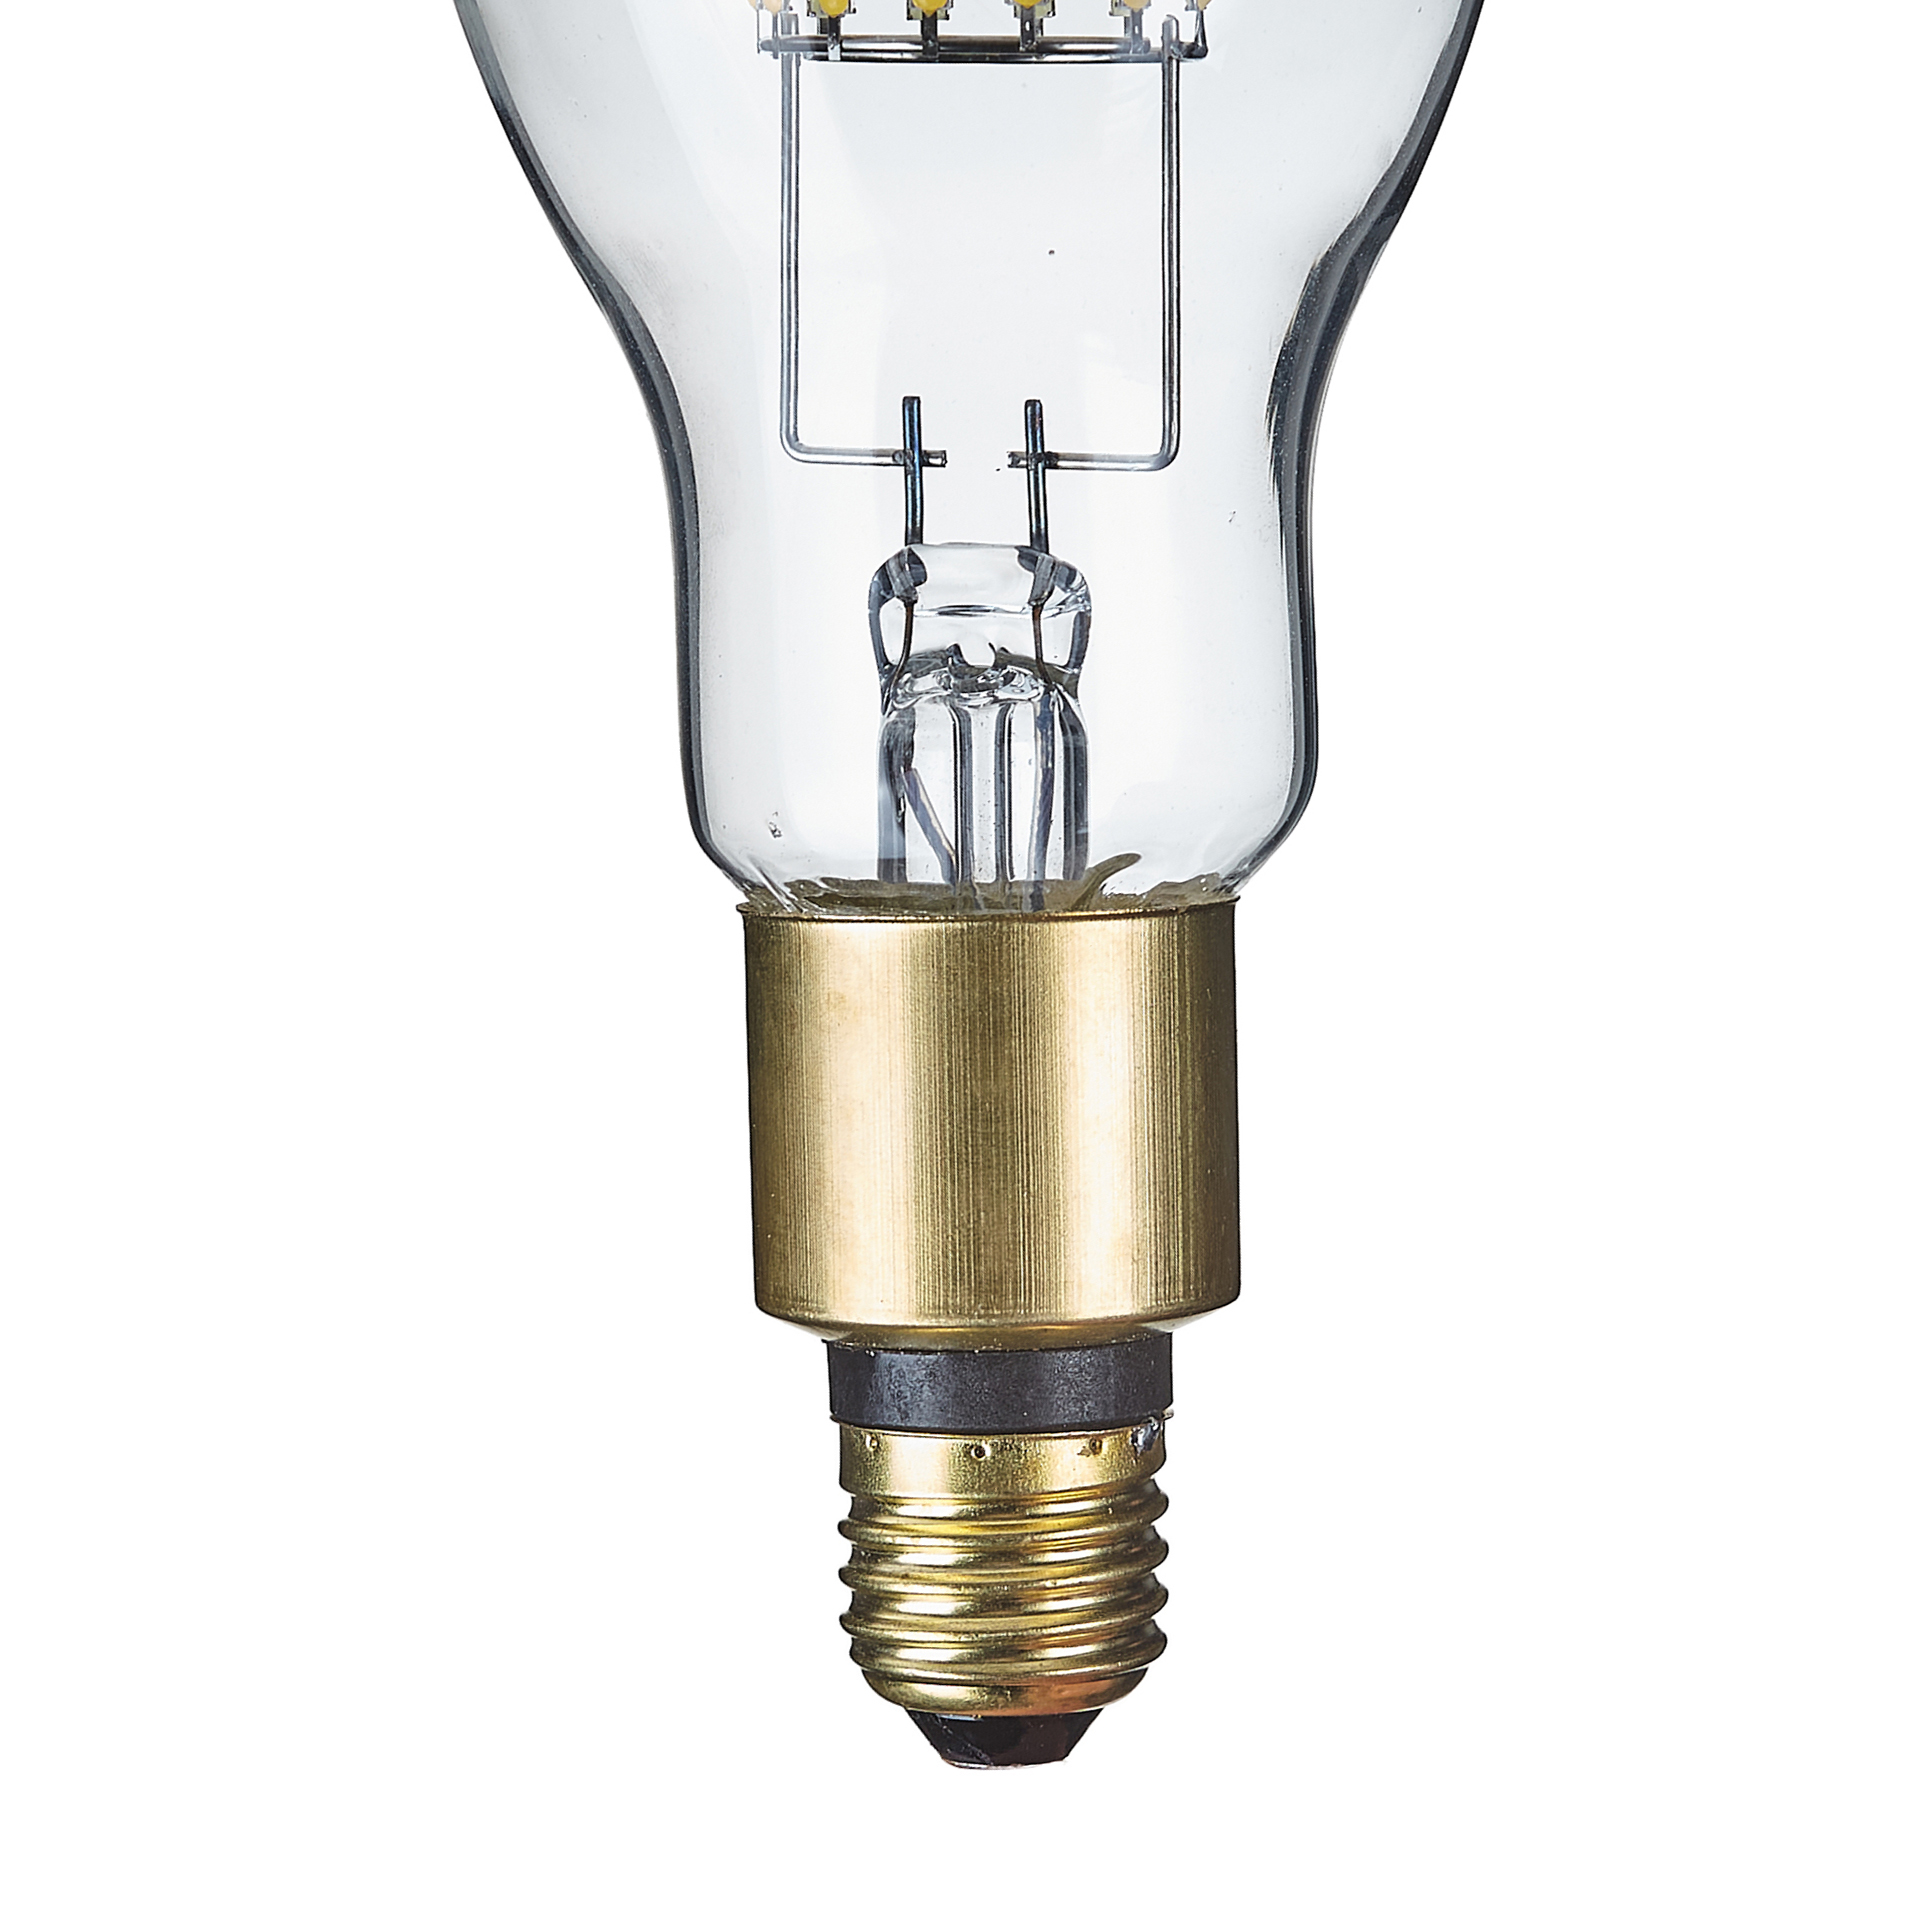 De alta potencia de 30W LED calle ED90 filamento de la lámpara E27 / E40 Base